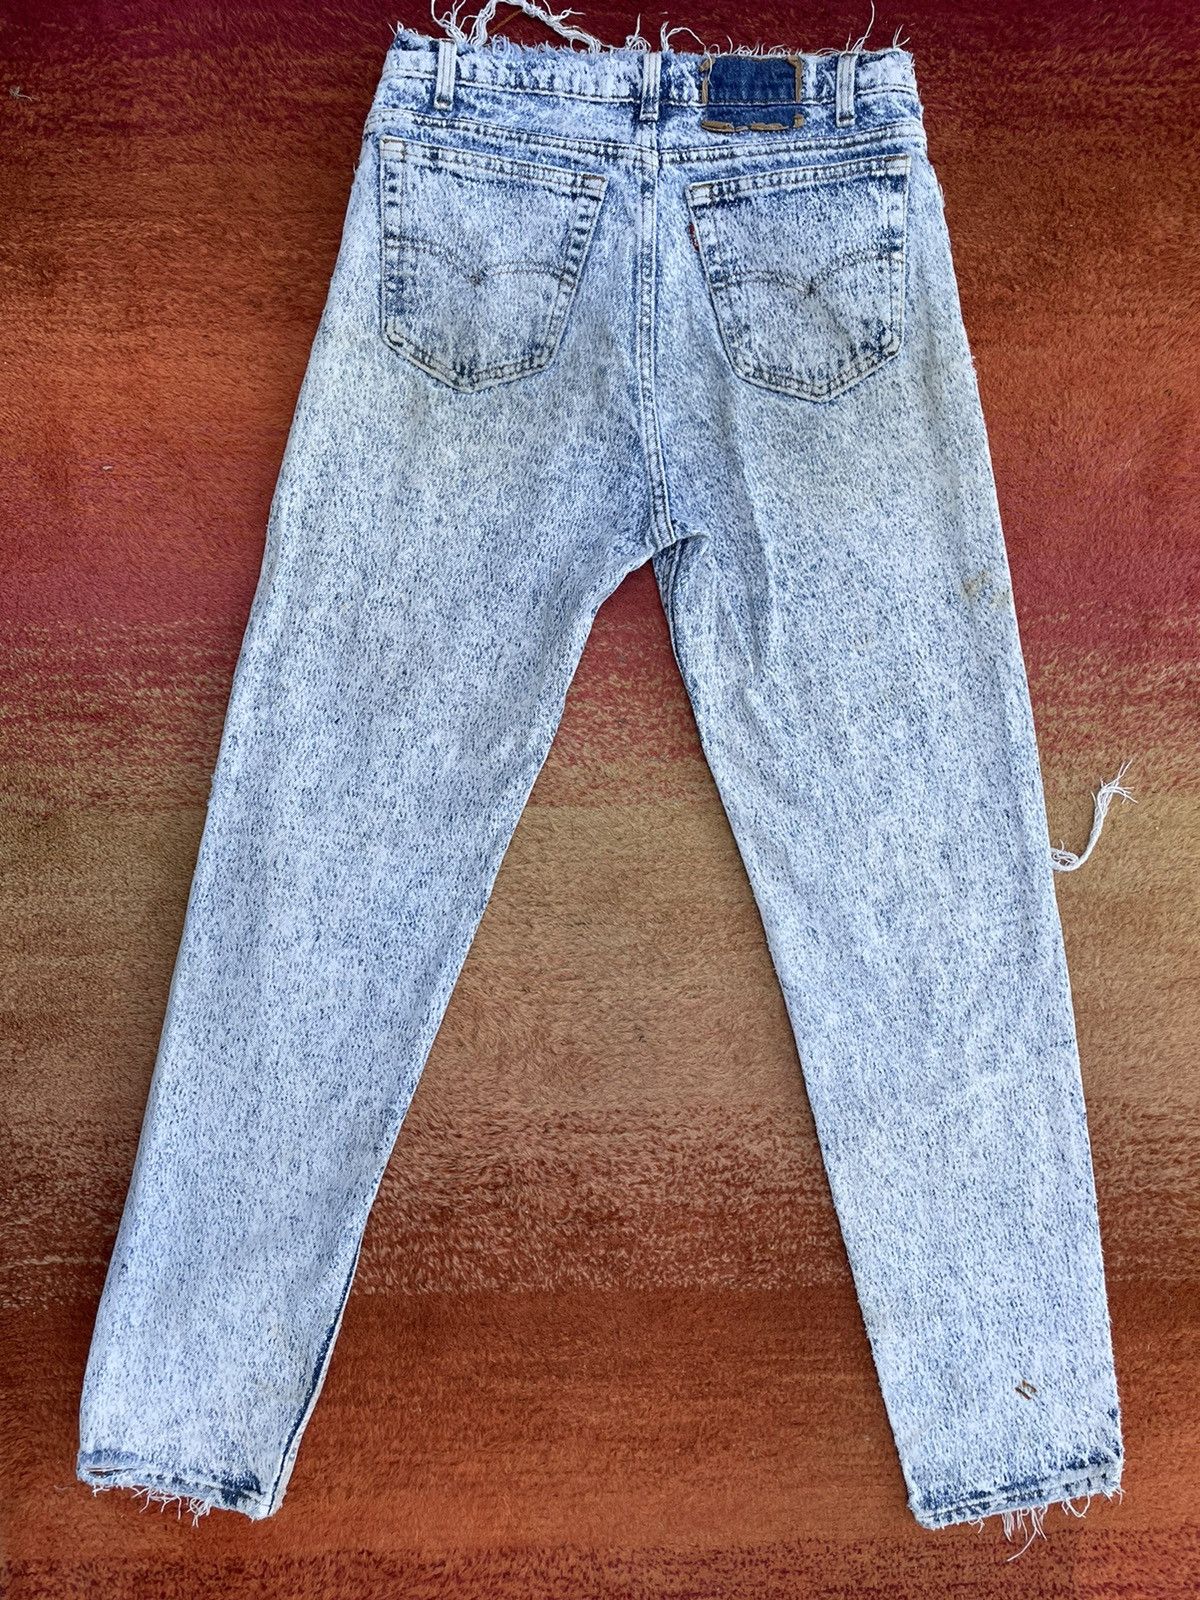 Vintage Vintage Levi Jeans Size 27" / US 4 / IT 40 - 2 Preview